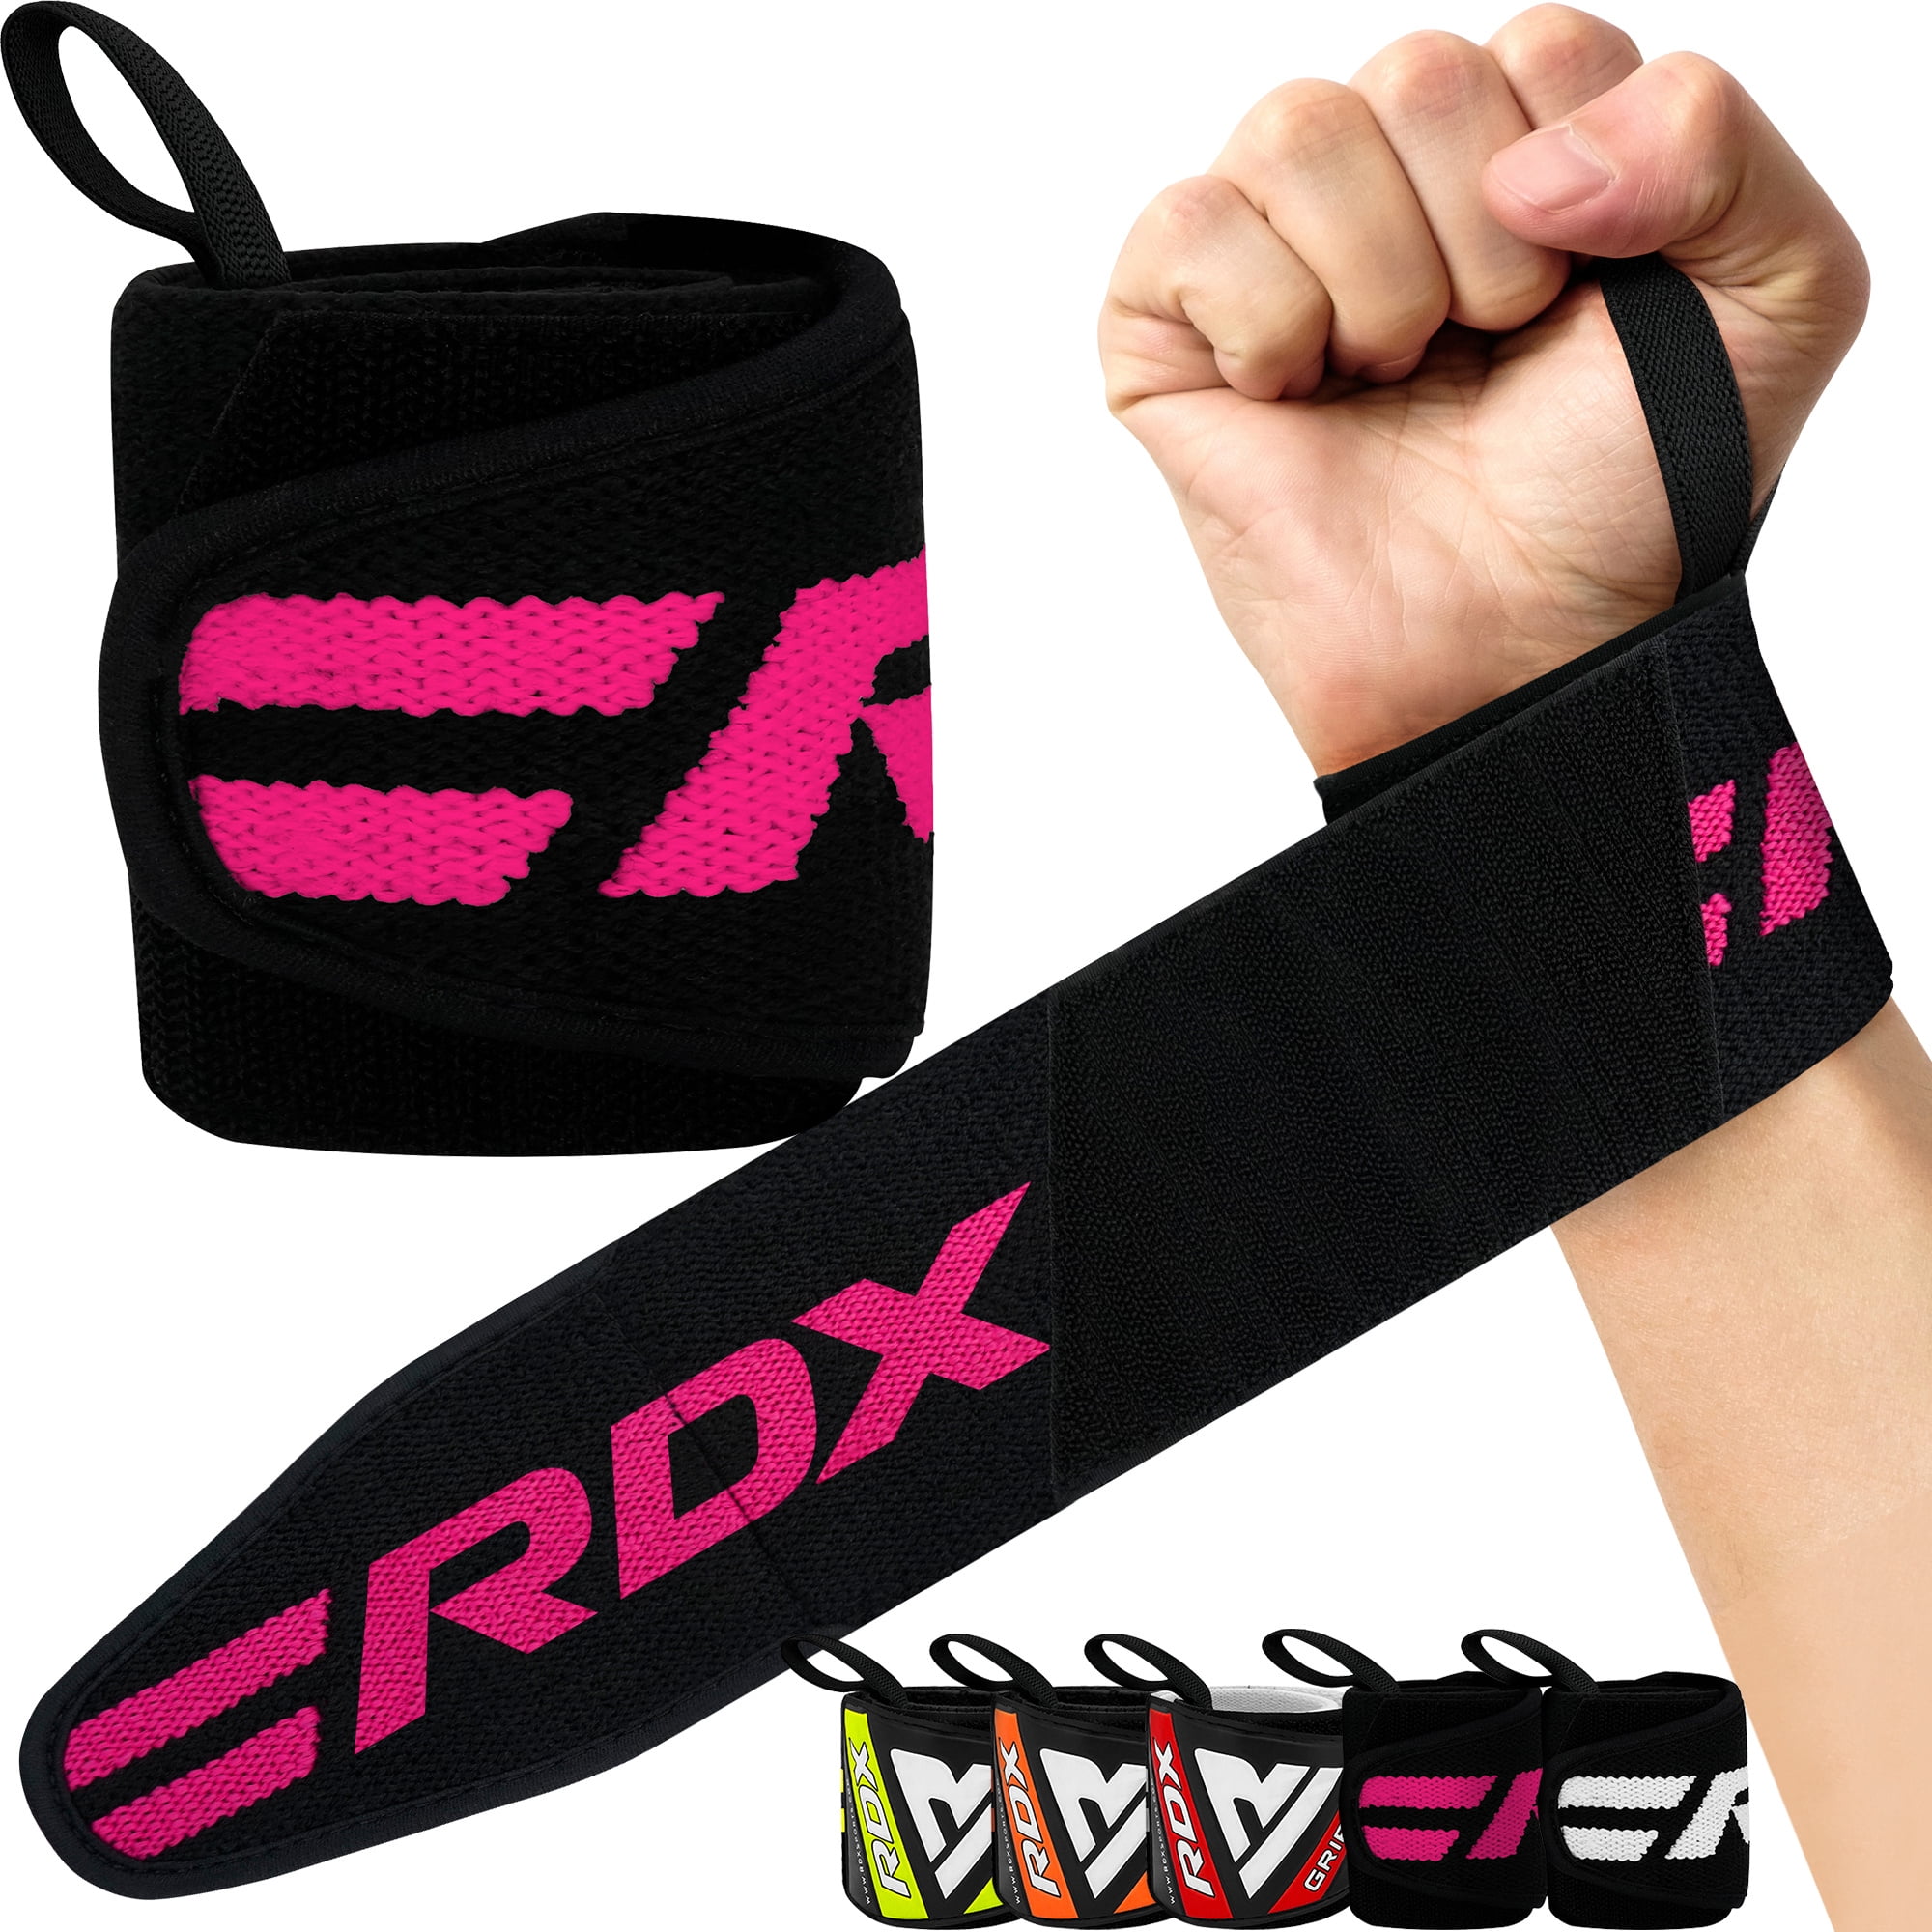 RDX W11 Wrist Wraps with Closure Strap